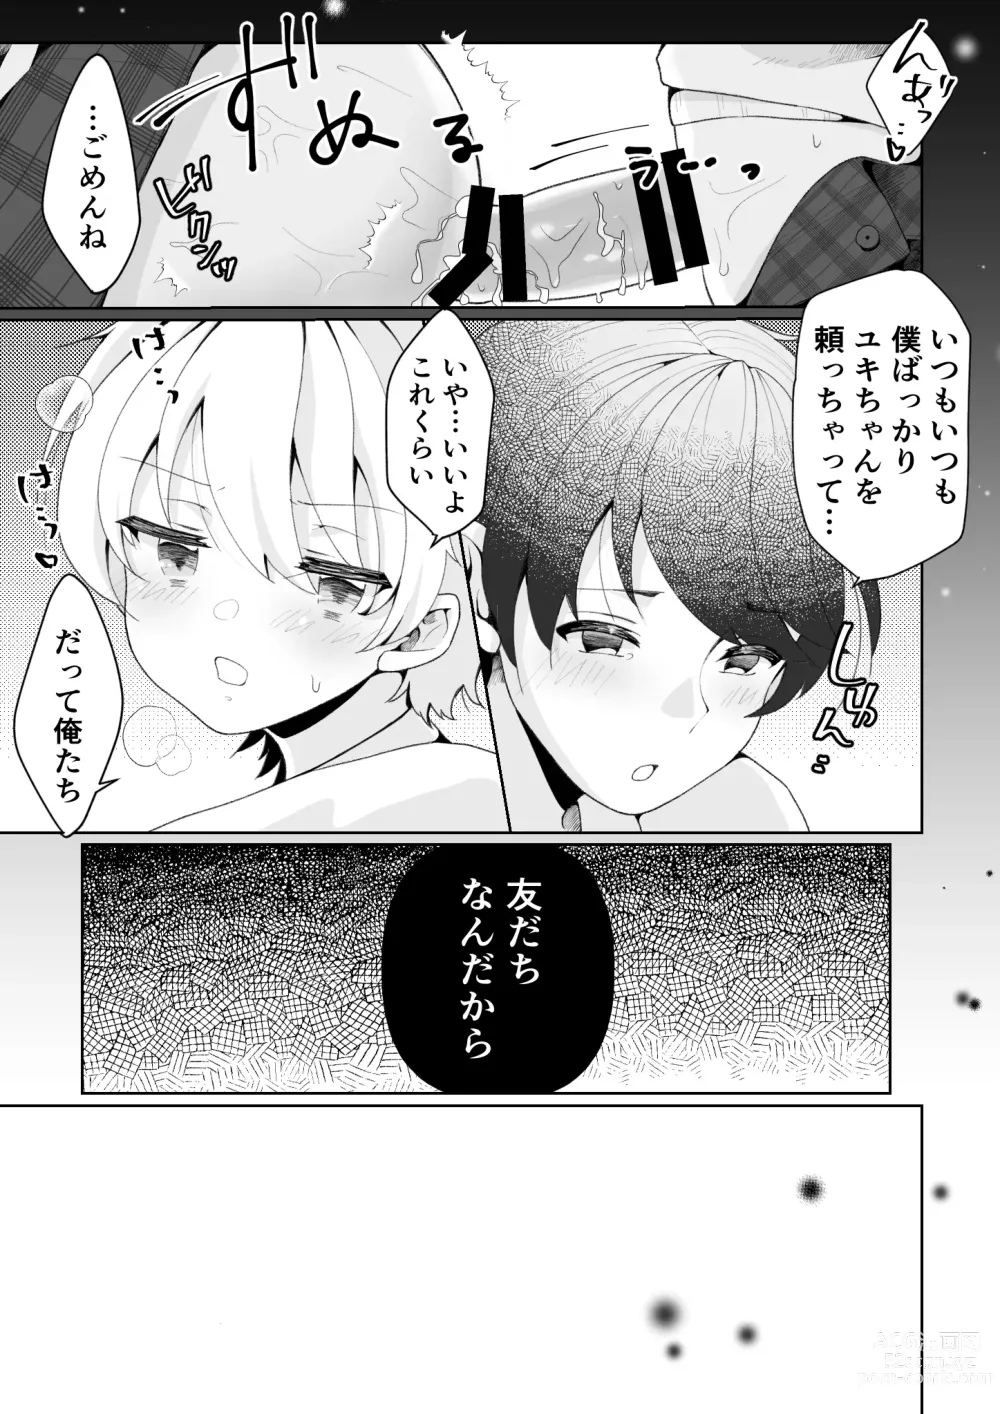 Page 7 of doujinshi TS shita Ore no Shinyuu ga Yandere ni Naru made